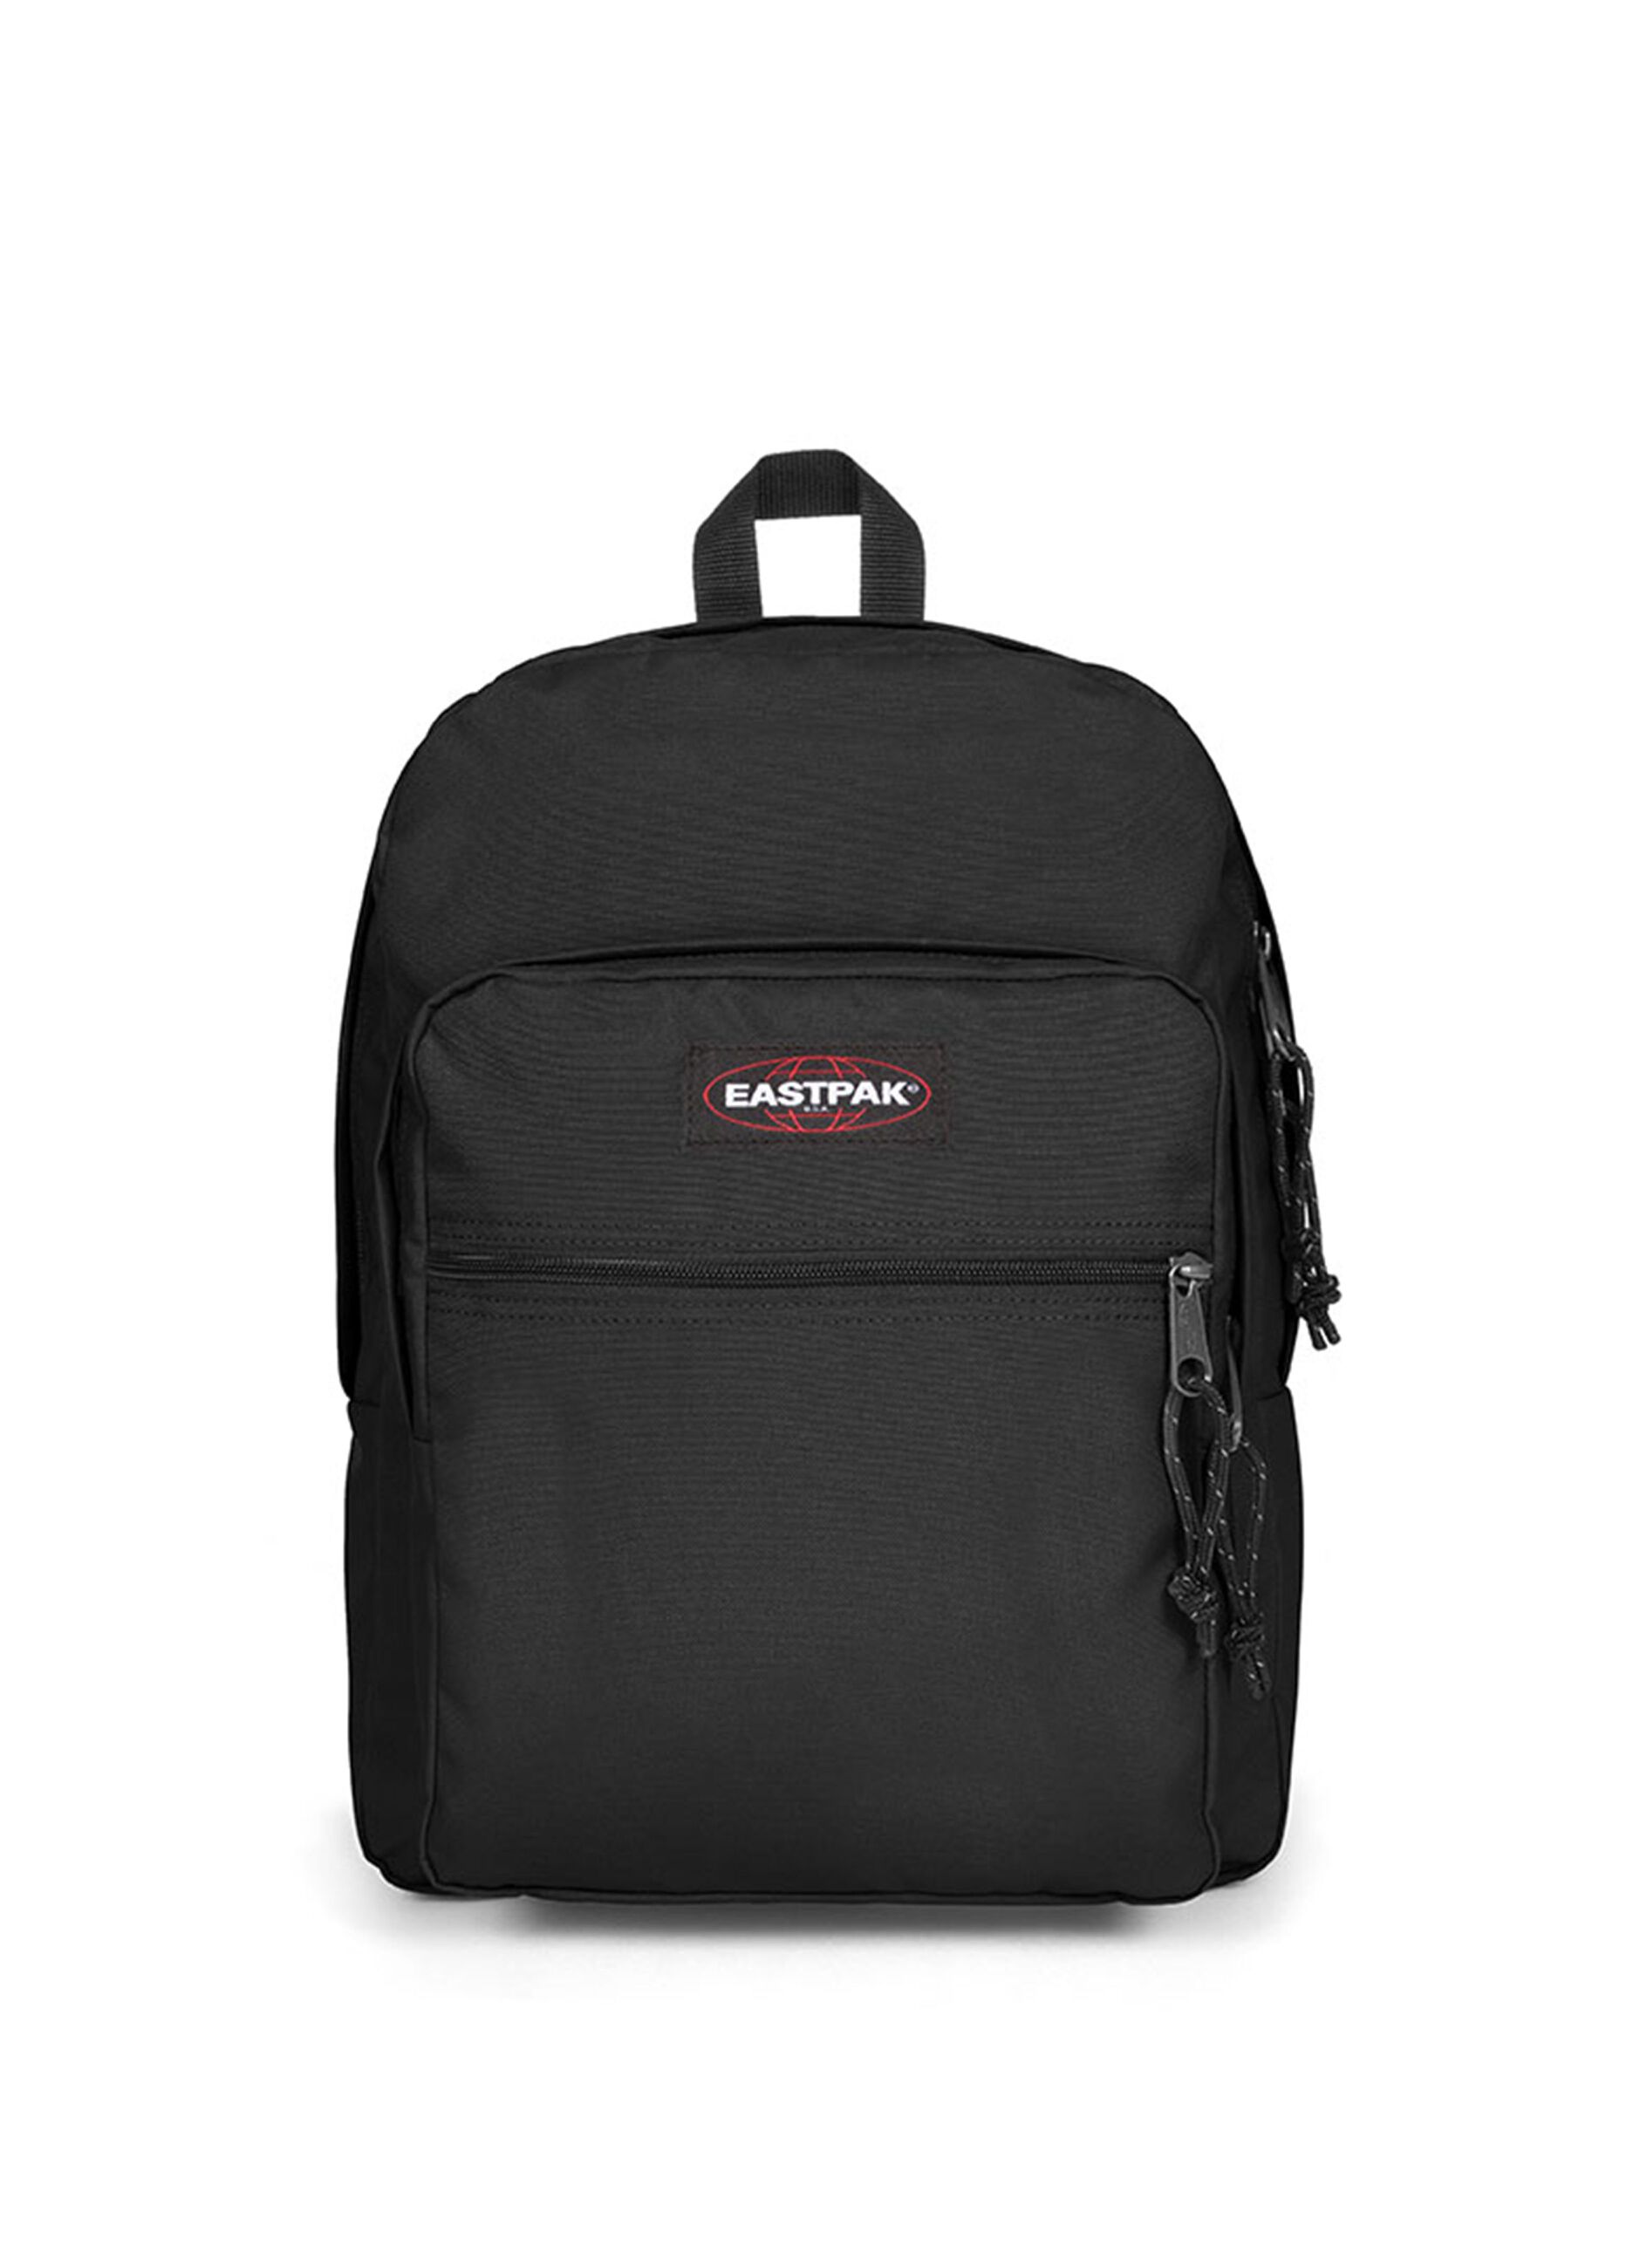 Morius Light Eastpak backpack